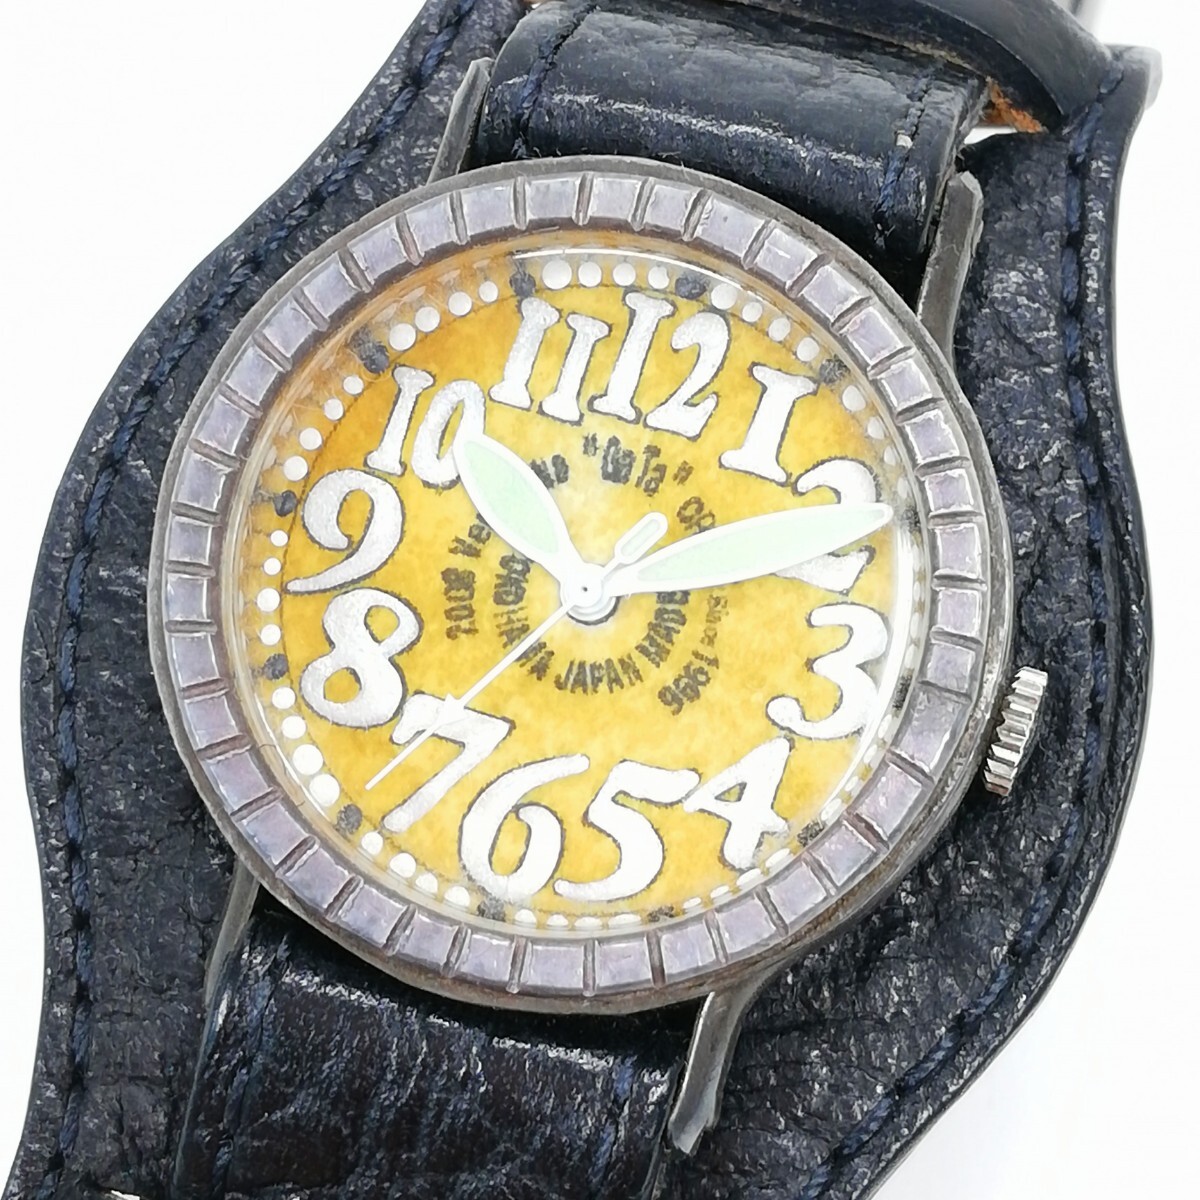 231 GaTa montre smith GaTa montre-bracelet faite à la main analogique quartz style antique artisanat cadran jaune pour hommes opération non confirmée, Analogique (type quartz), 3 aiguilles (heure, minutes, secondes), autres